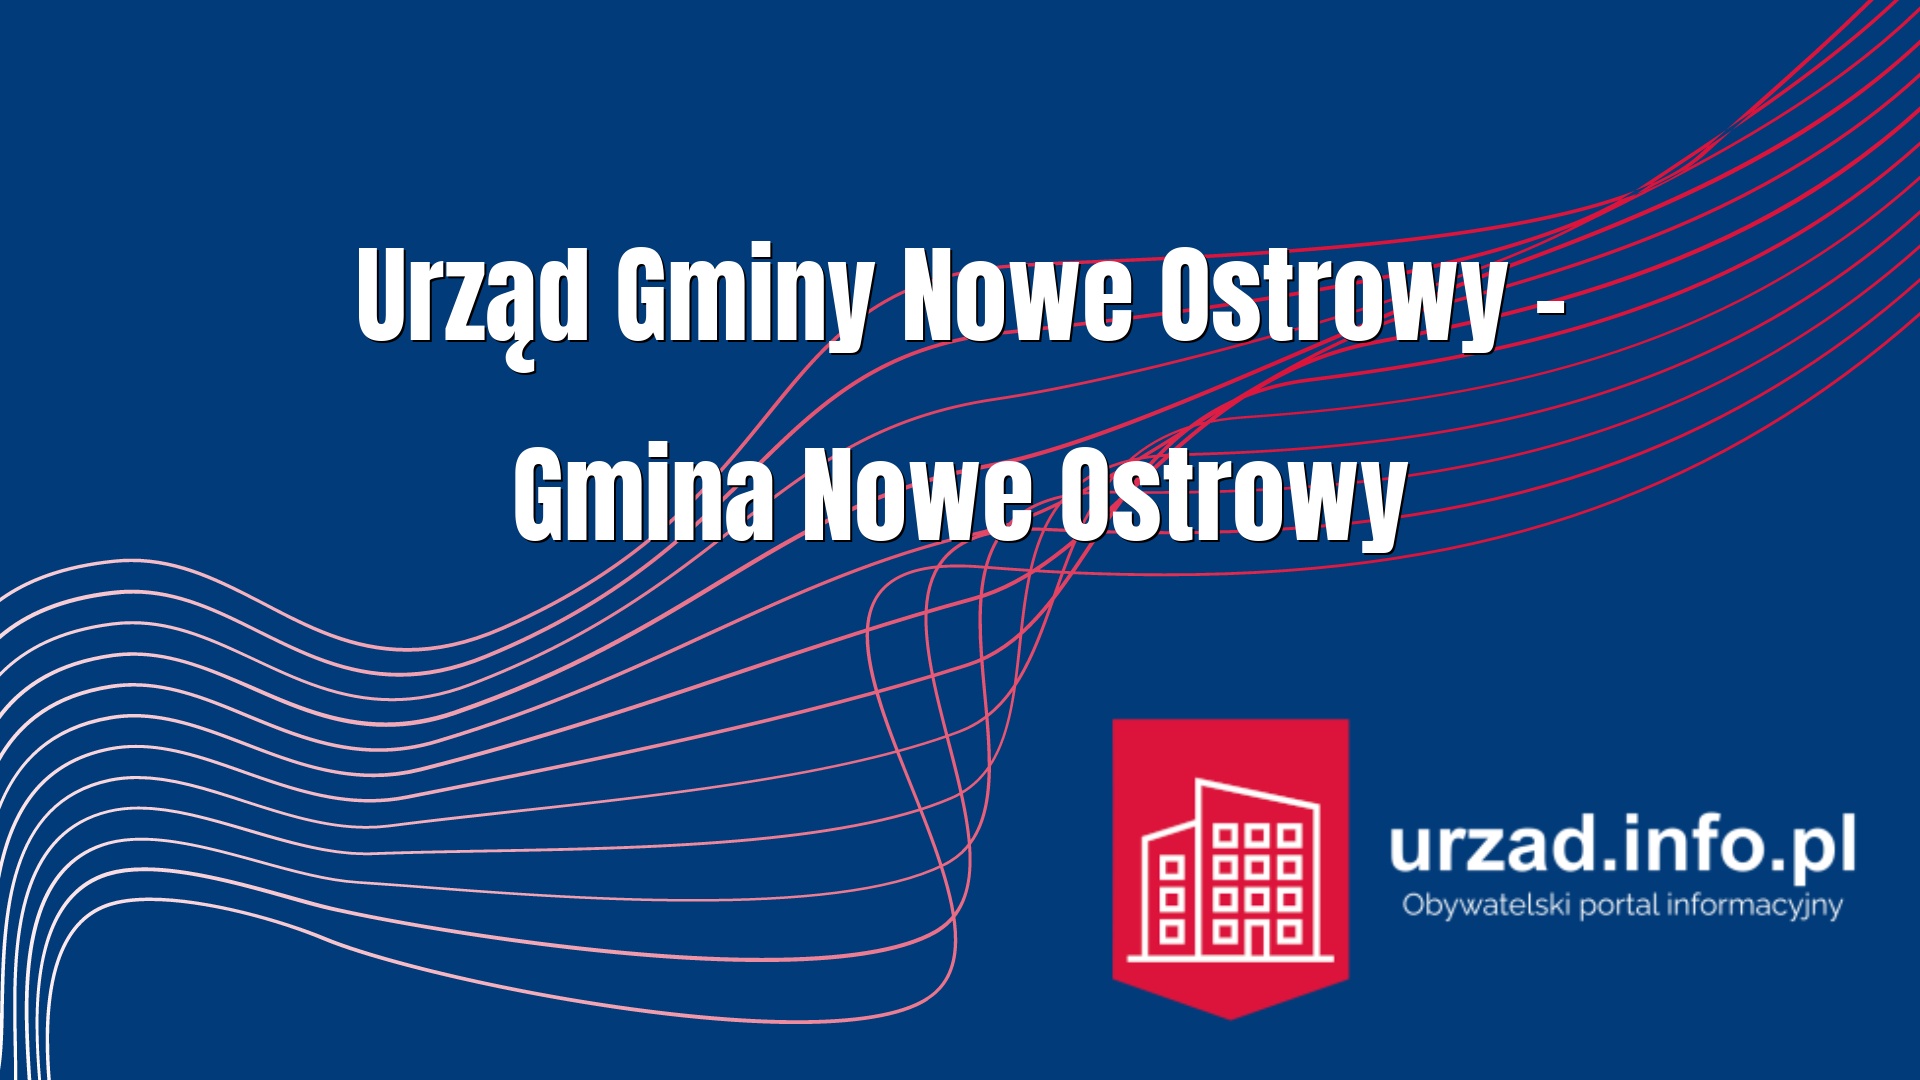 Urząd Gminy Nowe Ostrowy – Gmina Nowe Ostrowy